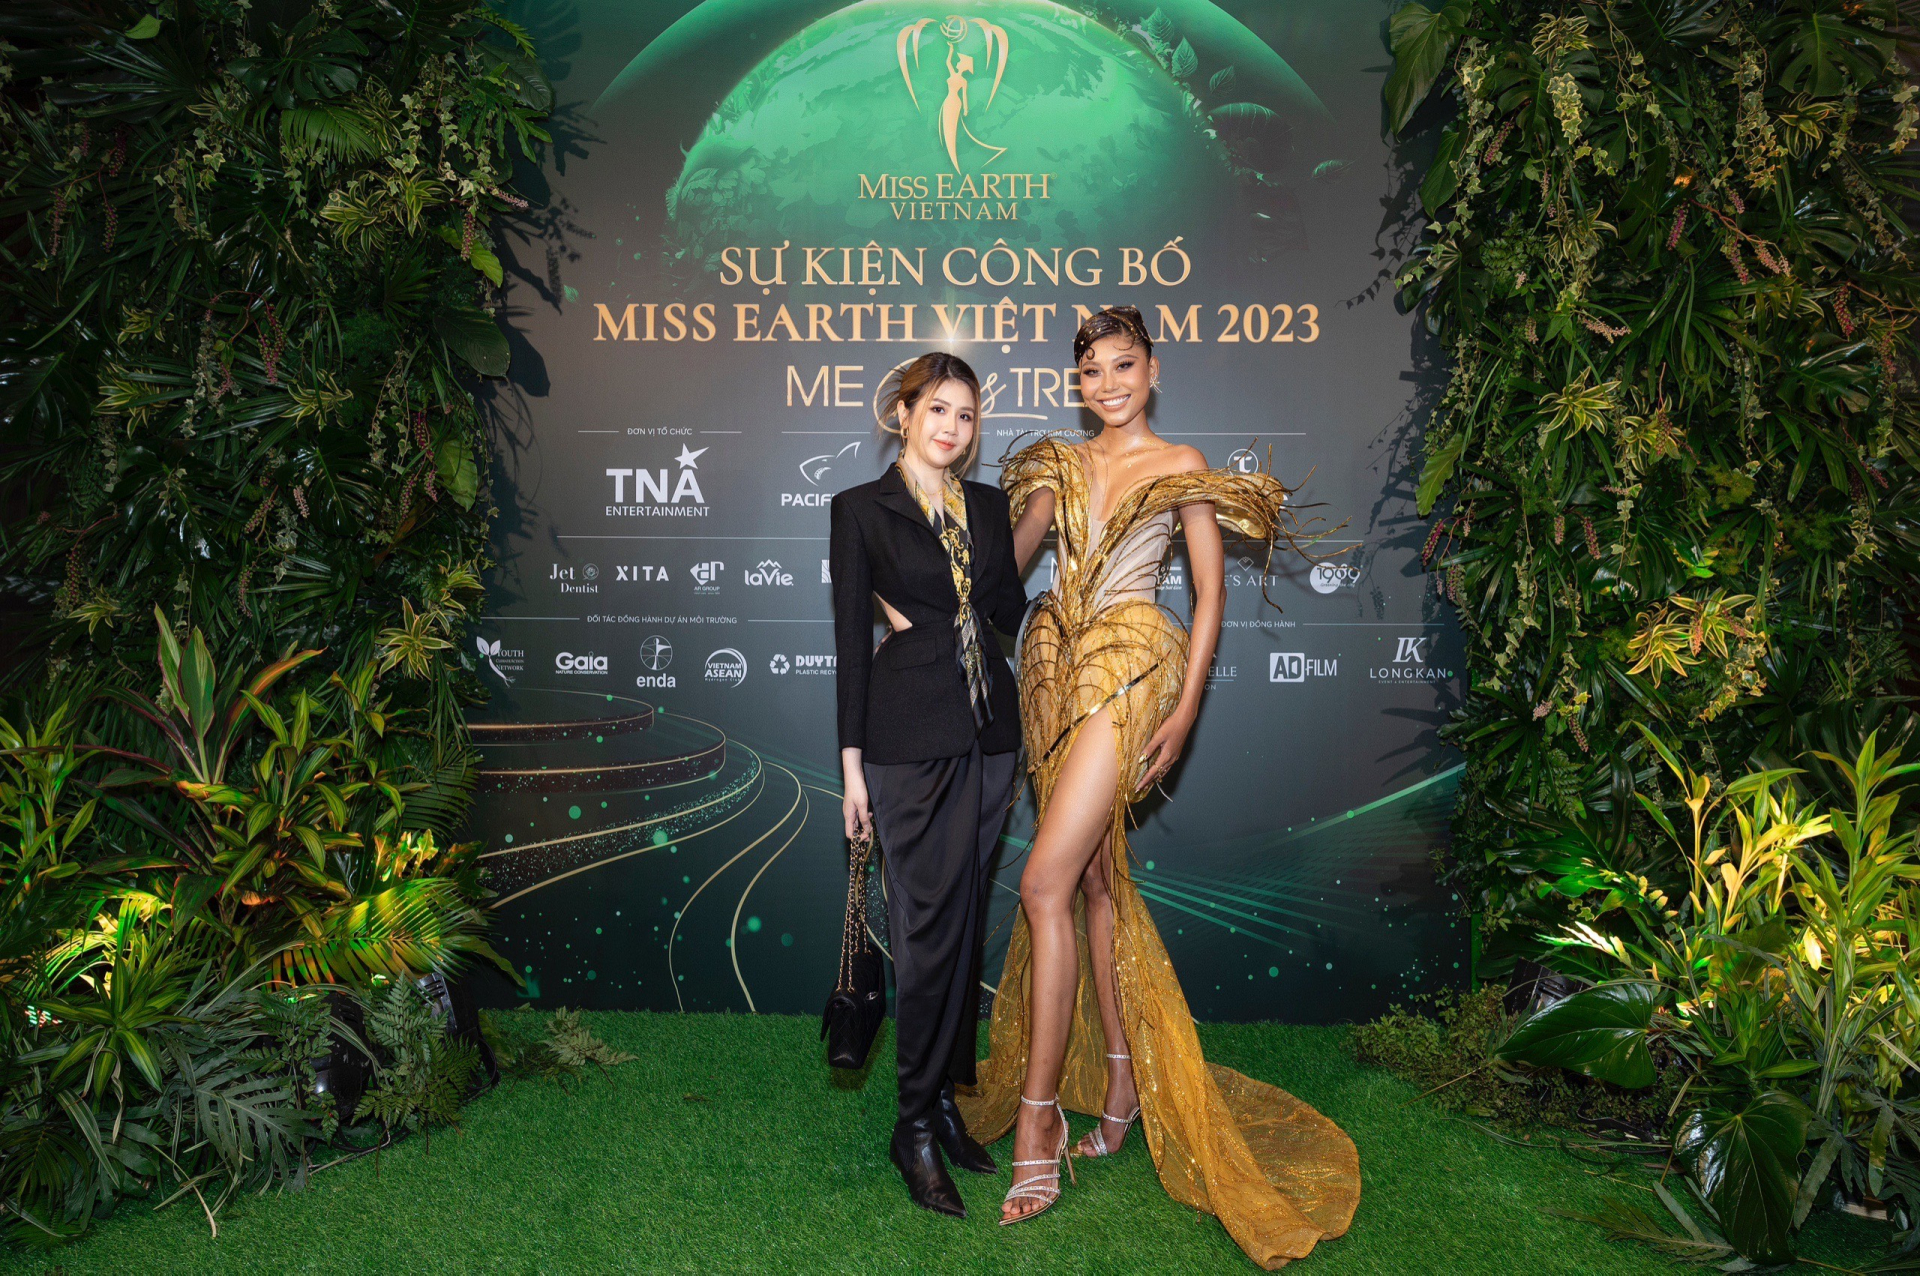 Phương Đài cho biết cô cảm thấy vinh dự vì được đồng hành cùng Miss Earth Vietnam 2023 vì đây là sân chơi sắc đẹp có ý nghĩa lớn lao về vấn đề bảo vệ môi trường sống.